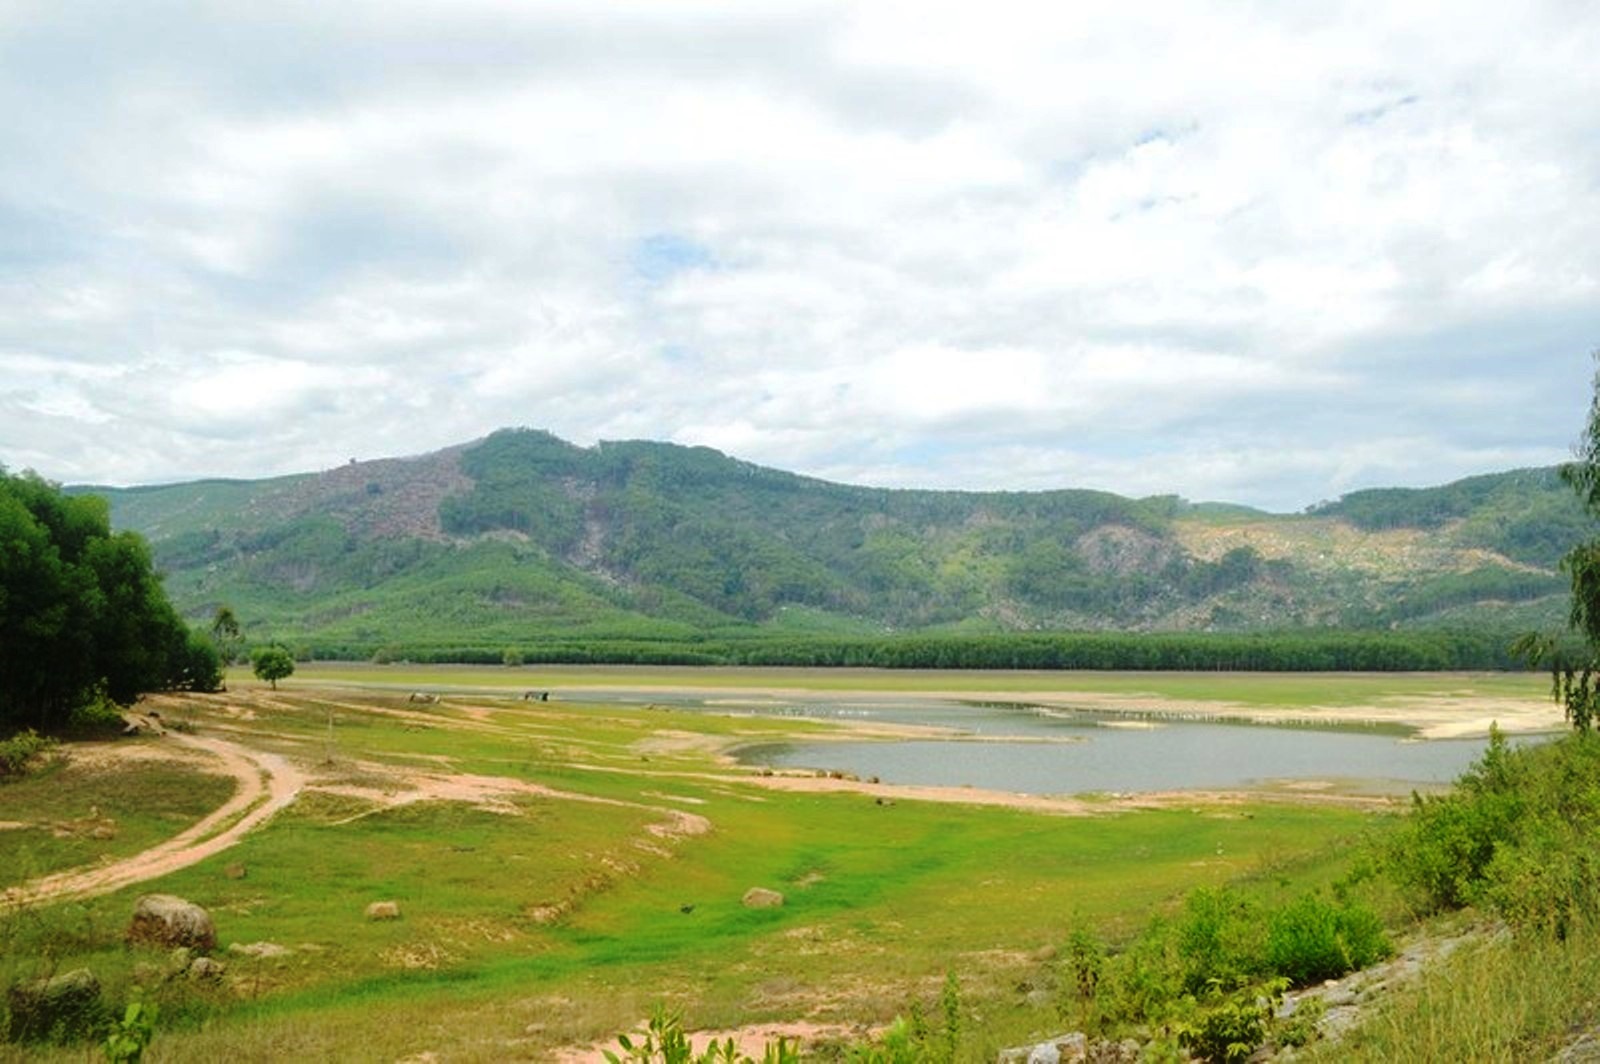 Nhiều hồ chứa nước ở Quảng Ngãi bị xuống cấp, việc được đầu tư sửa chữa, nâng cấp là rất cần thiết. Ảnh: Hiển Cừ